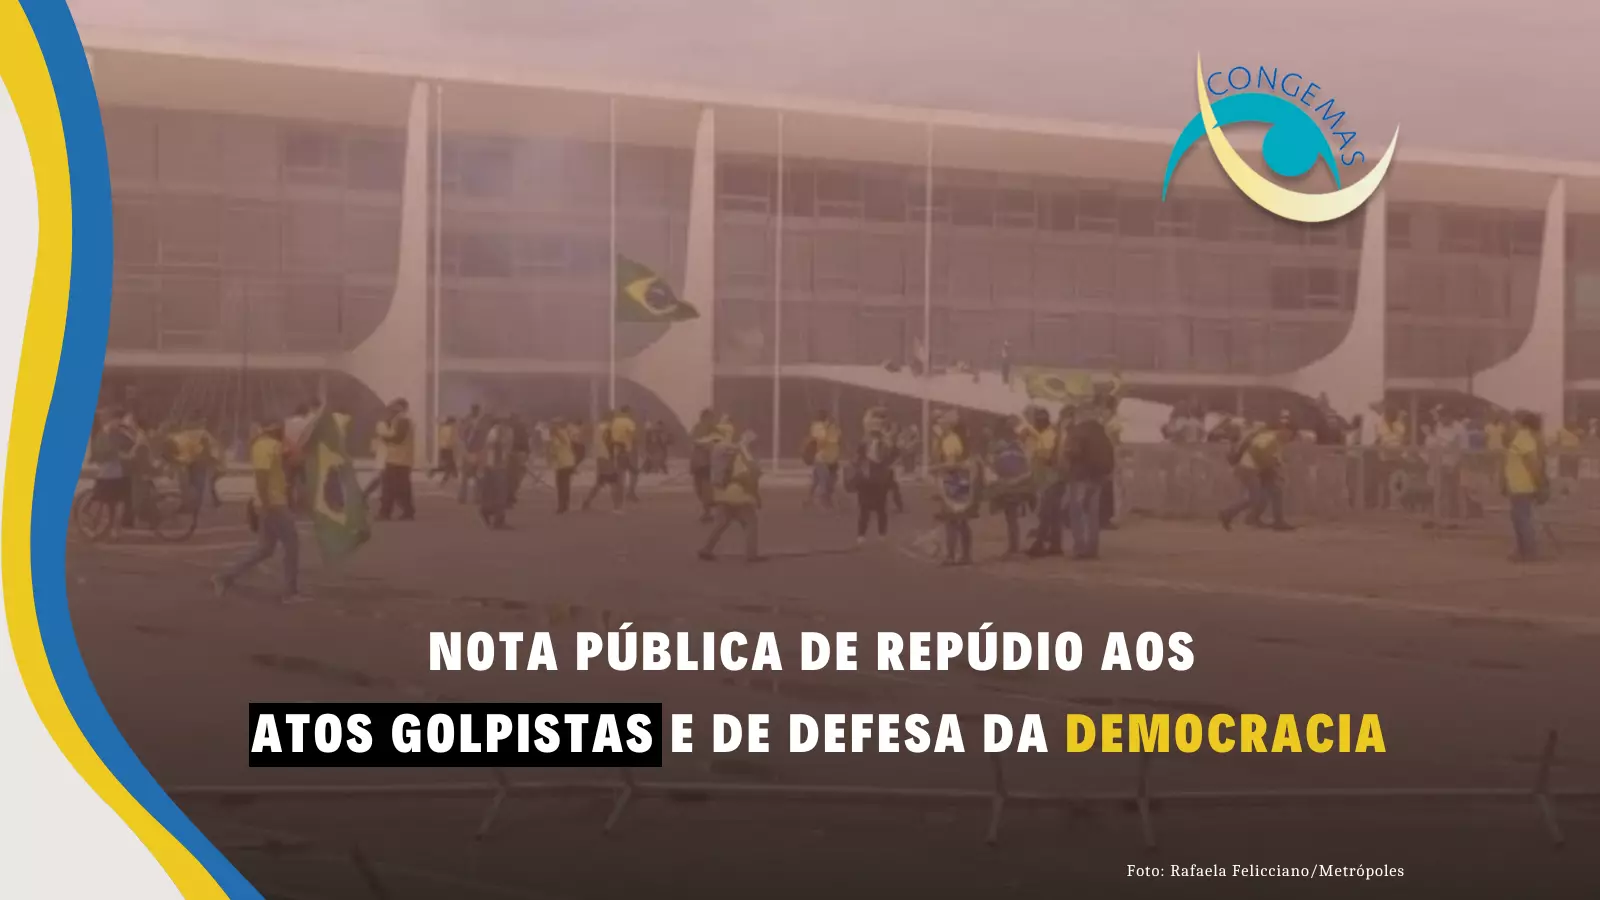 REPÚDIO AOS ATOS GOLPISTAS E DE DEFESA DA DEMOCRACIA - NOTA PÚBLICA